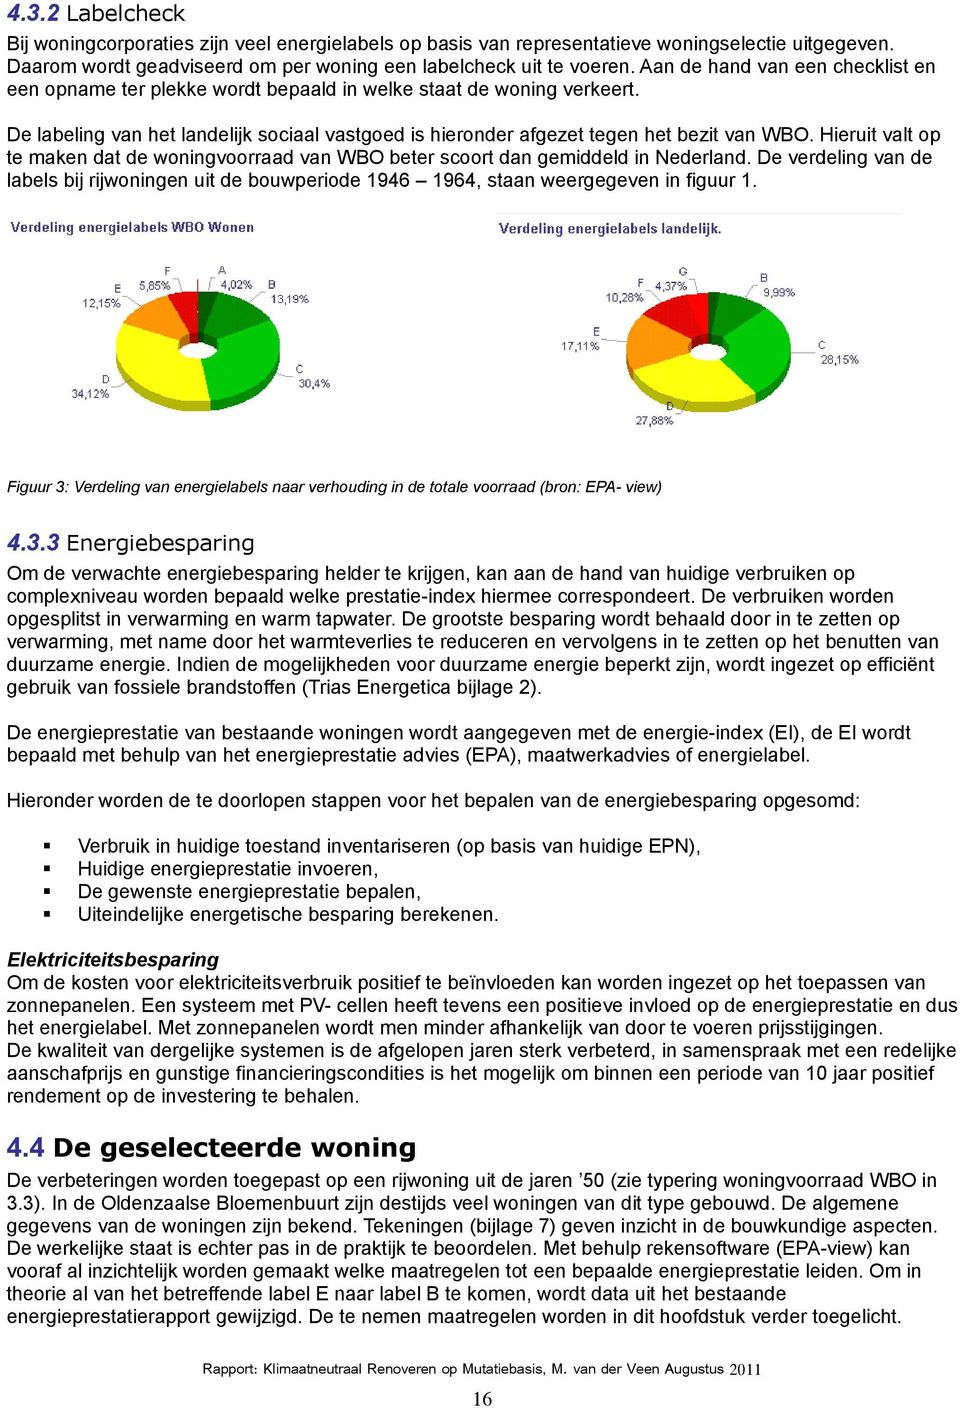 Hieruit alt op te maken dat de woningoorraad an WBO beter scoort dan gemiddeld in Nederland. De erdeling an de labels bij rijwoningen uit de bouwperiode 1946 1964, staan weergegeen in figuur 1.